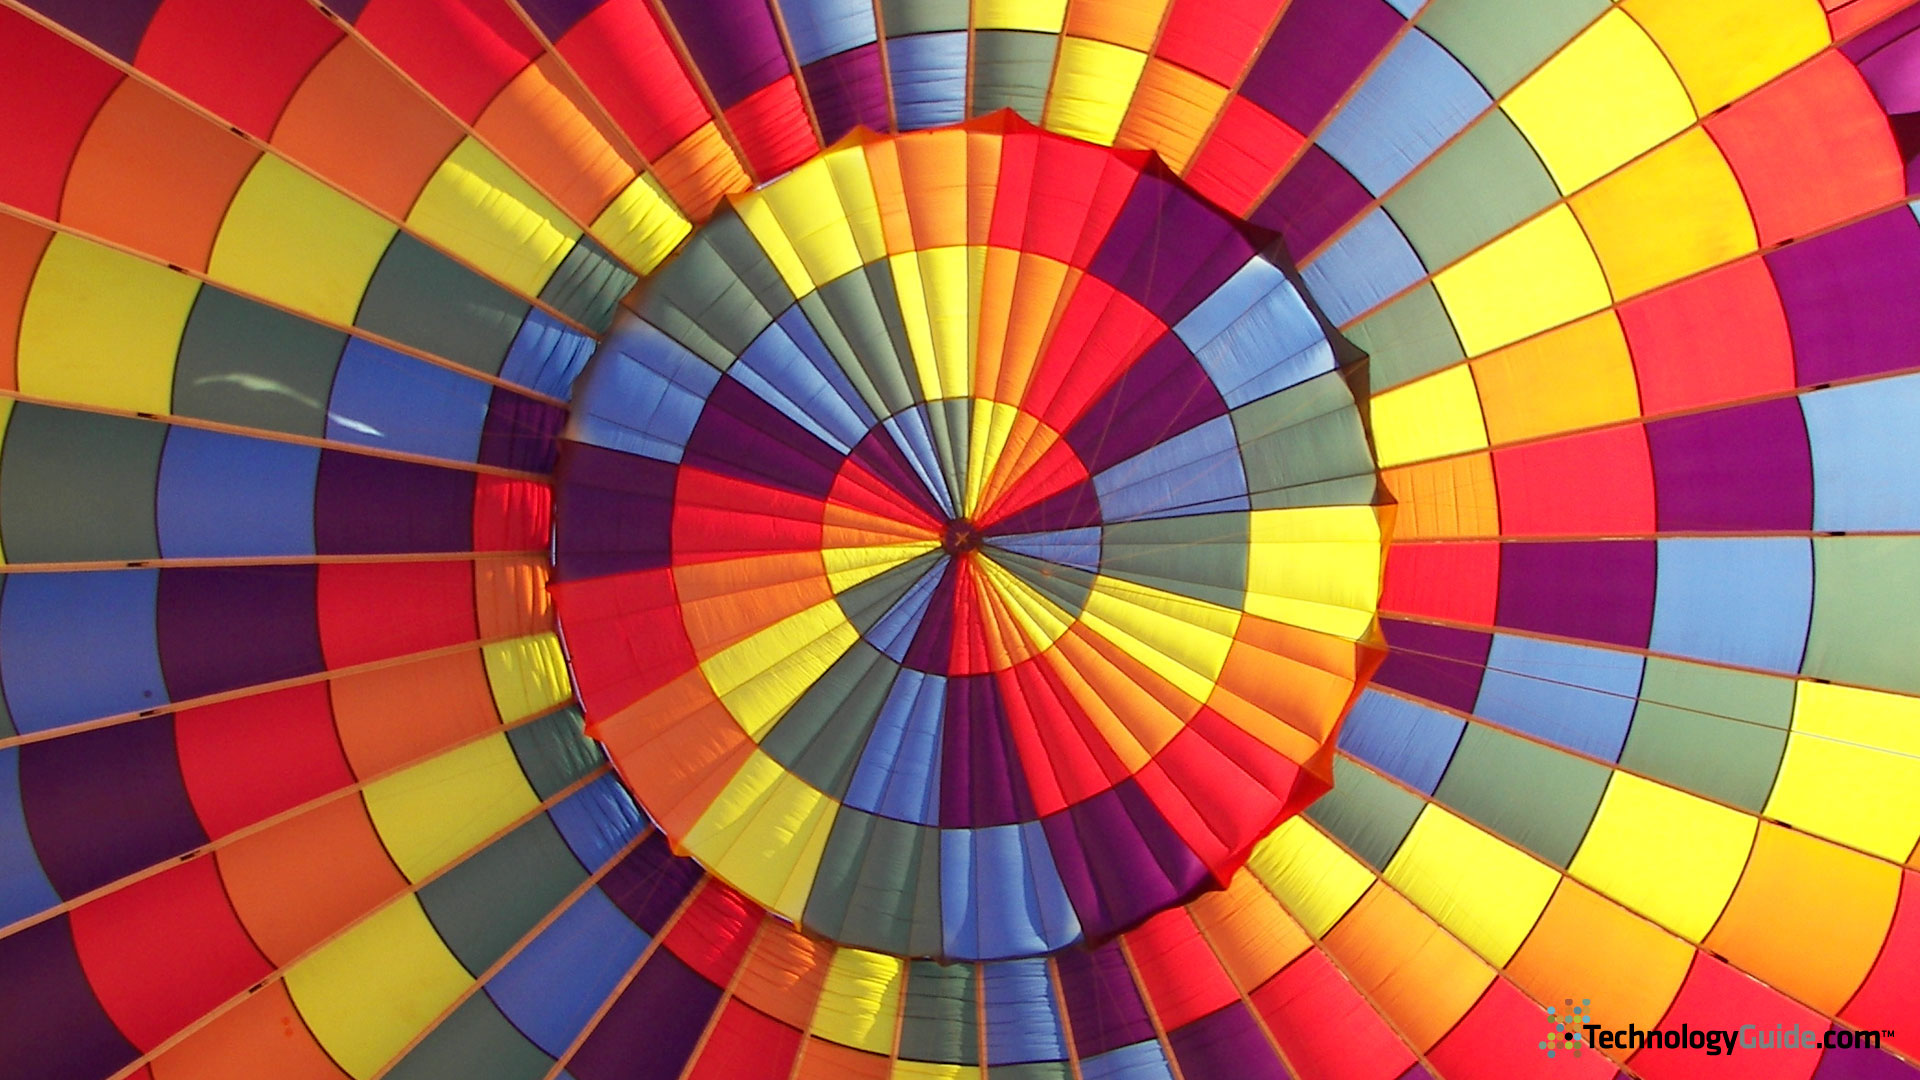 parachute wallpaper,hot air balloon,hot air ballooning,colorfulness,sky,pattern